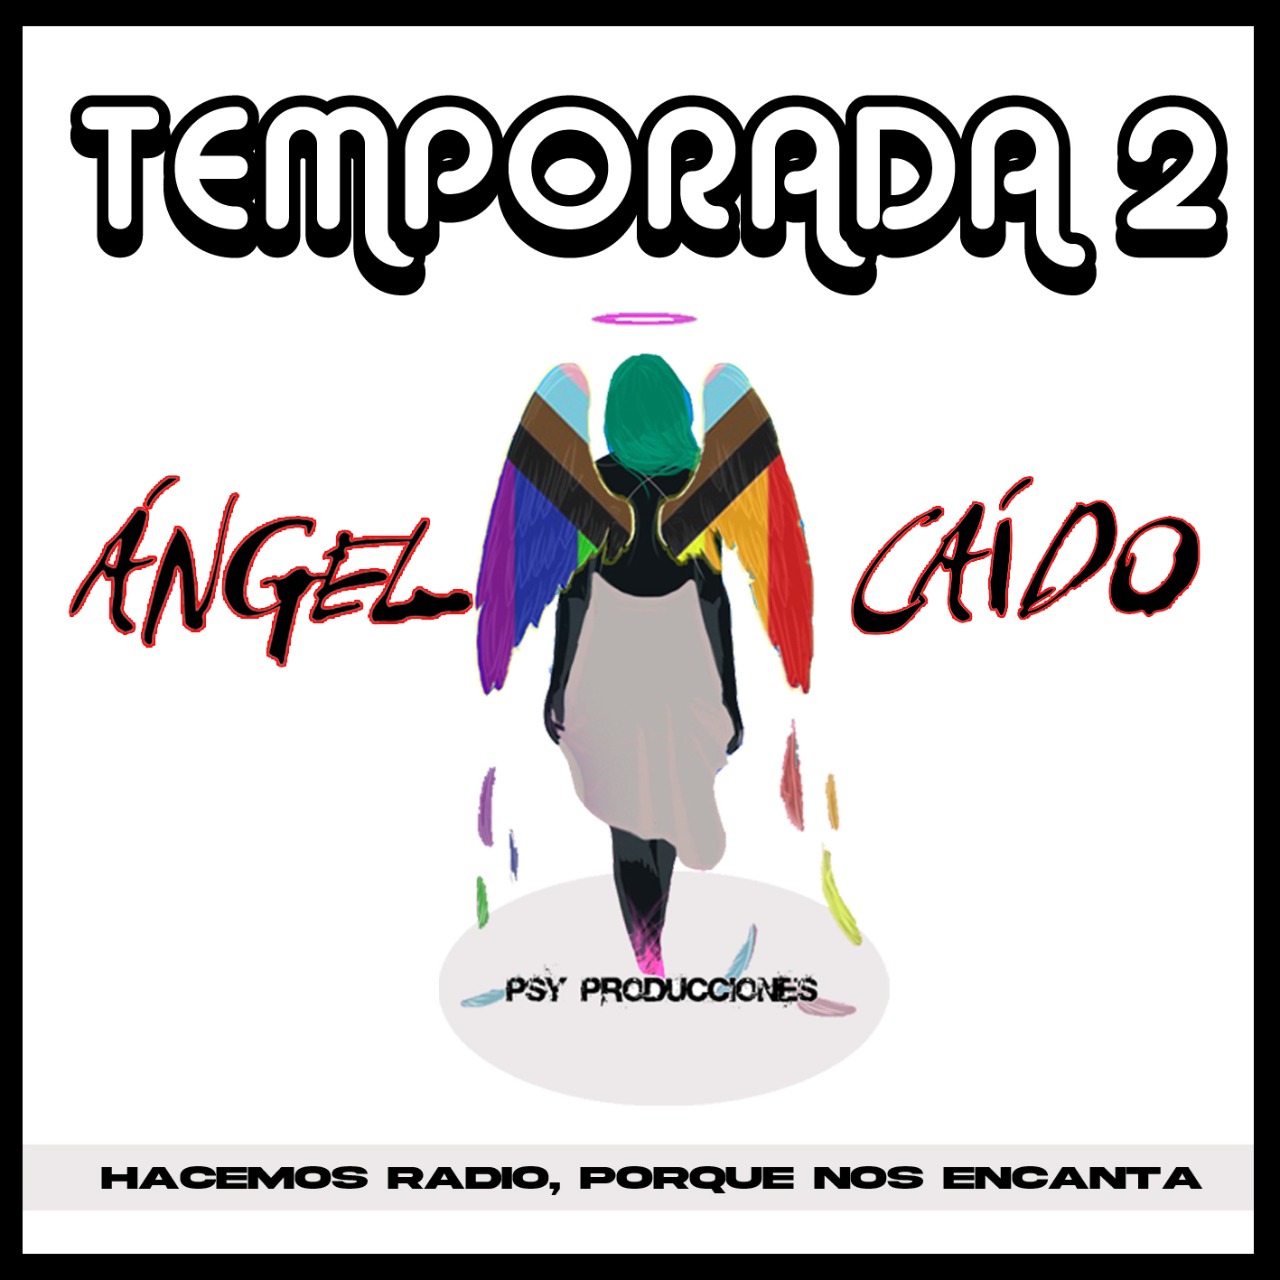 AngelCaido2